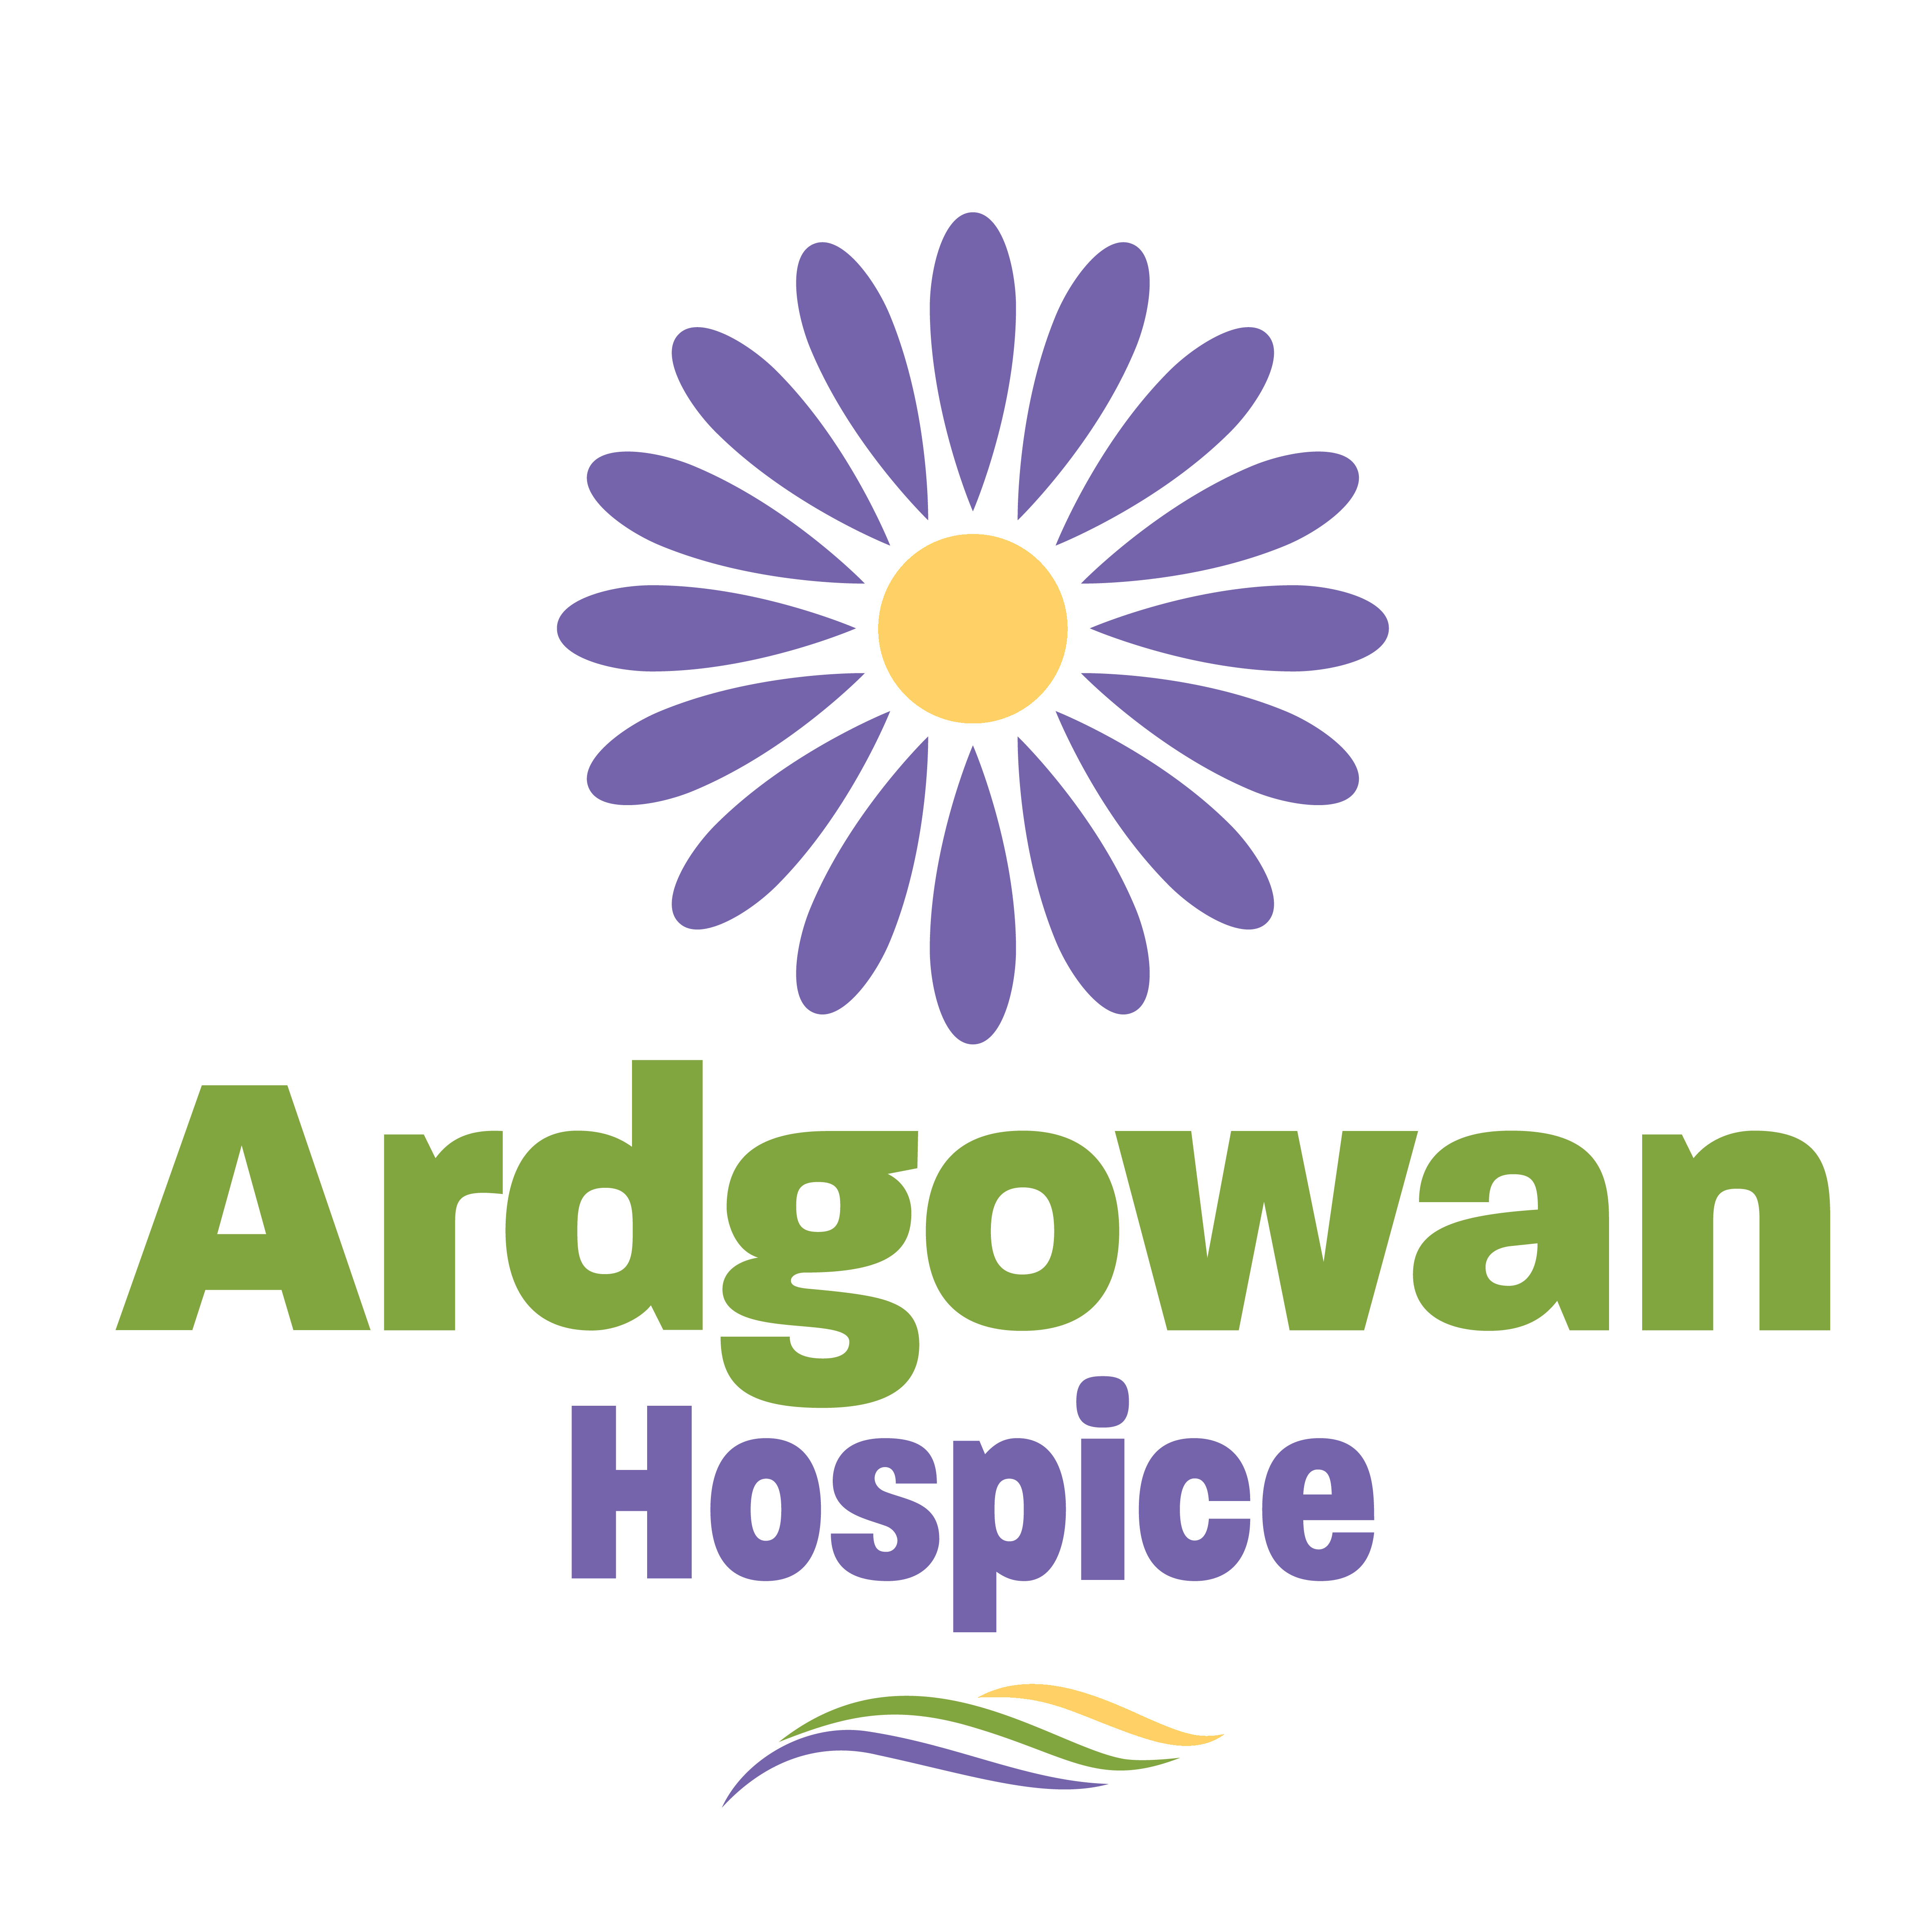 Ardgowan Hospice Ltd